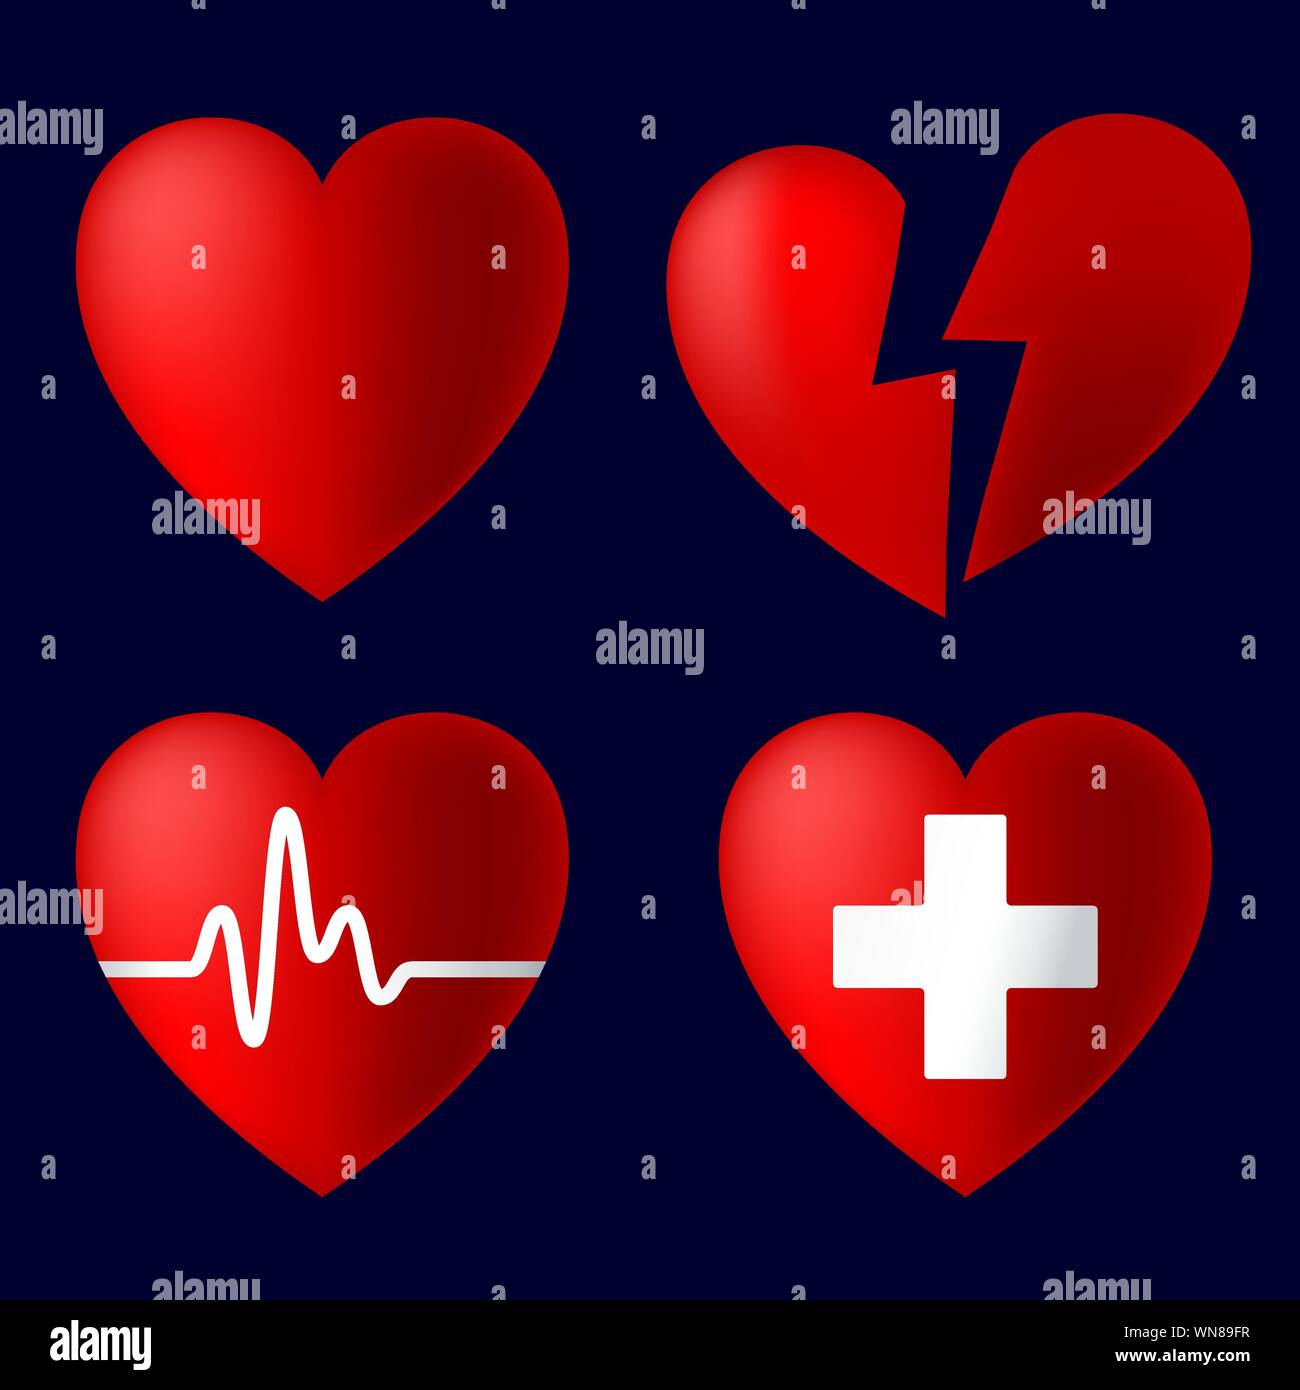 Illustrazione Vettoriale. Quattro icone di cuore con luci e ombre. Amore e salute simboli Illustrazione Vettoriale